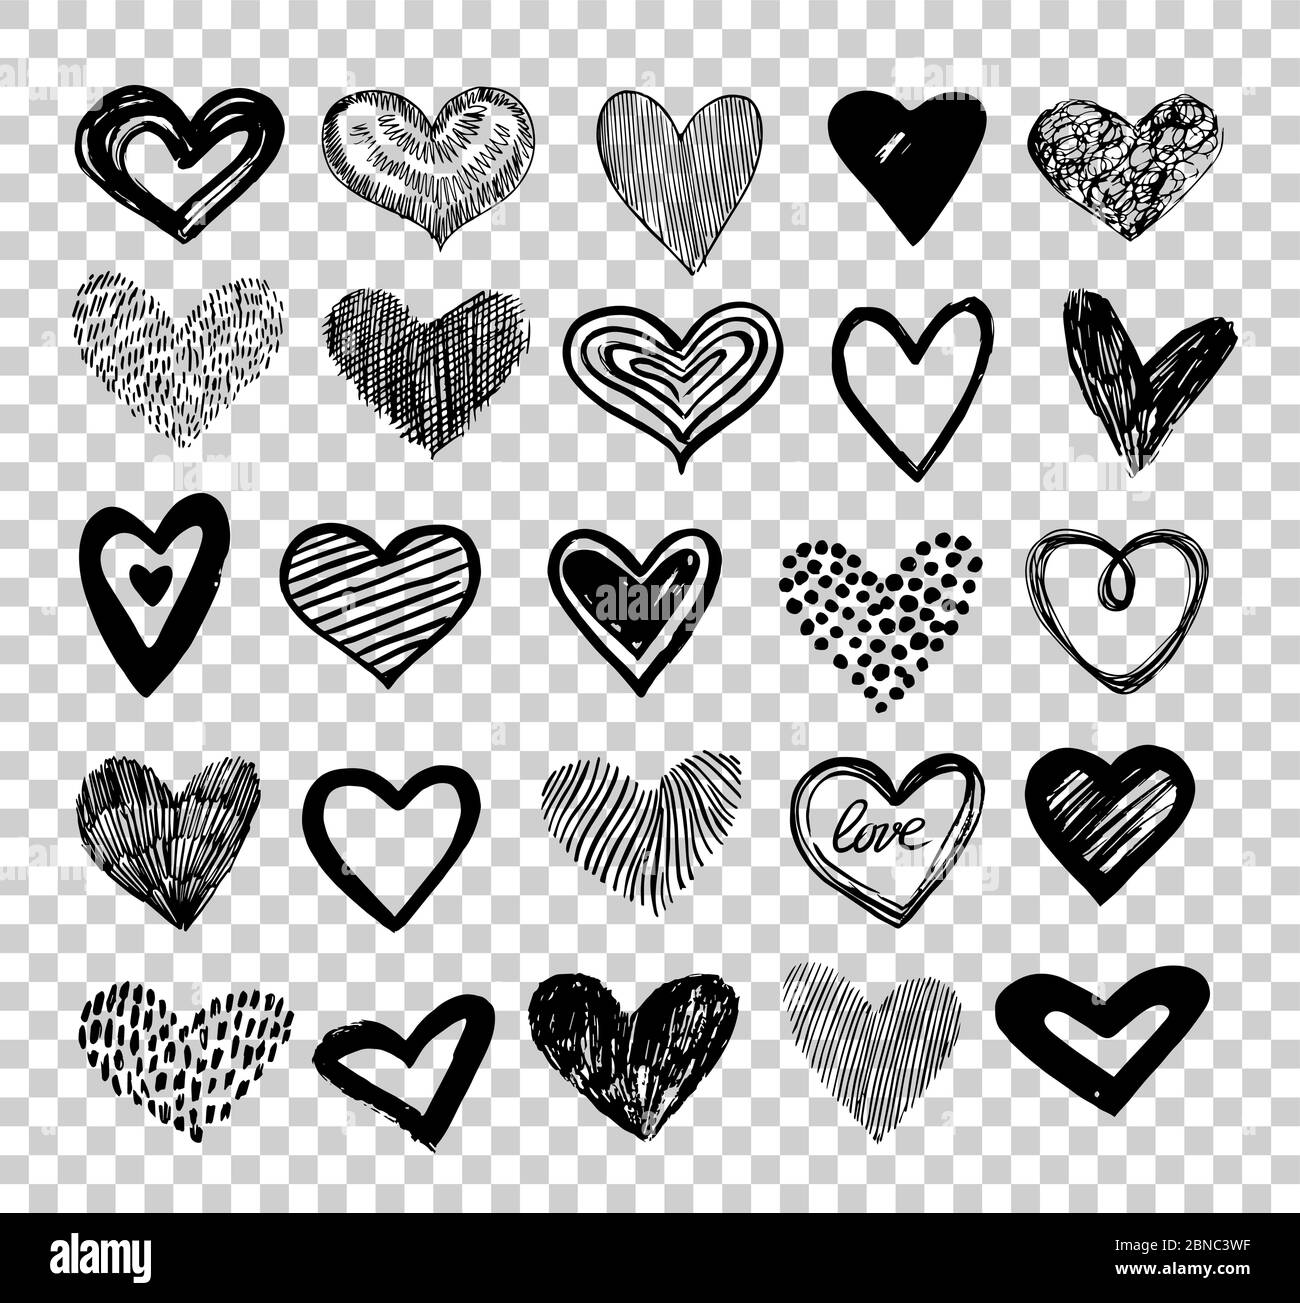 Doodle Hearts. Handgezeichnete Liebe Herz Symbole. Skizze valentine Grunge Herzen Vektor-Elemente isoliert auf transparentem Hintergrund. Schwarzes Herz skizzenhaft für valentine dat Illustration Stock Vektor